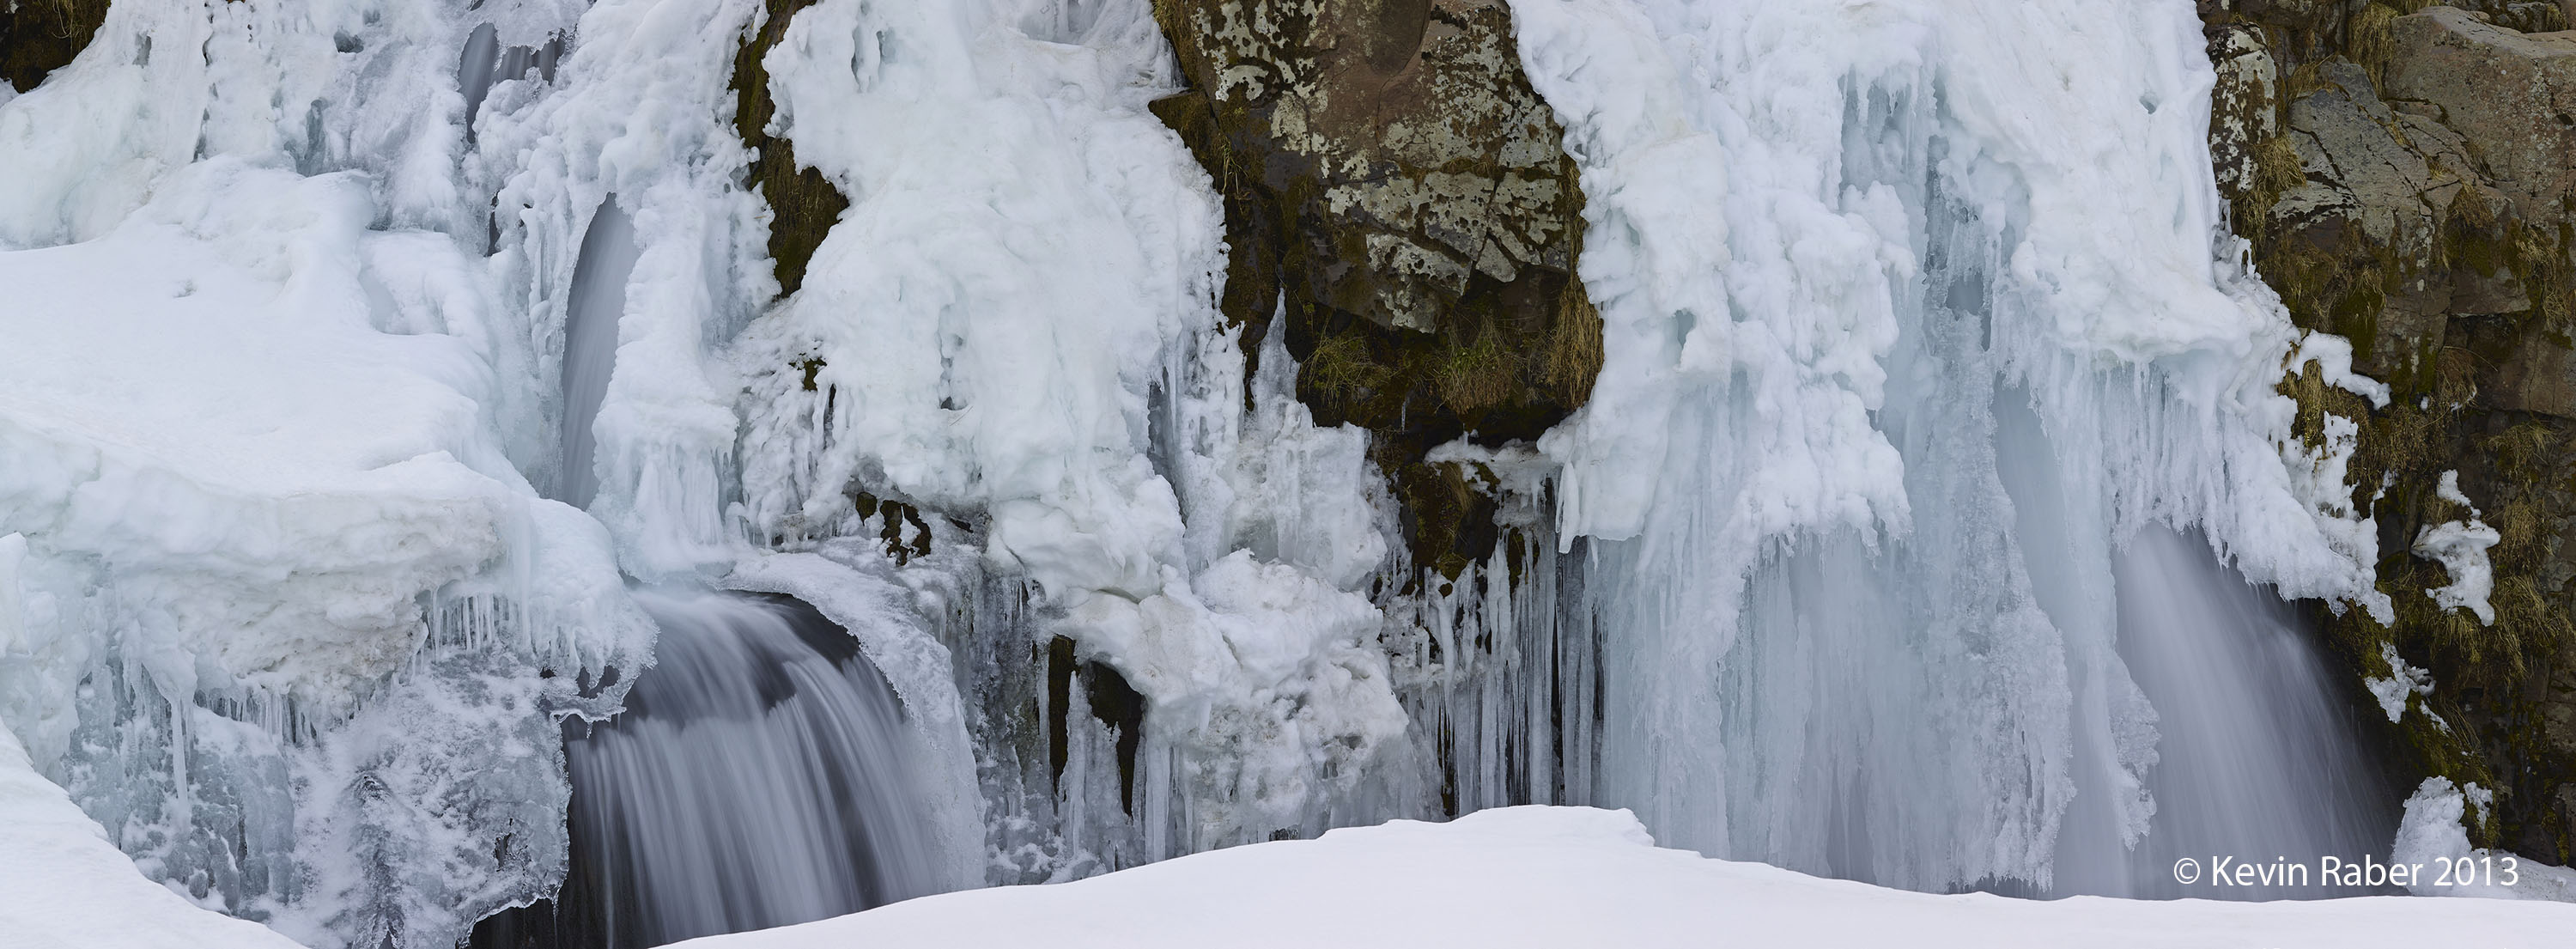 Frozen Waterfall, Iceland